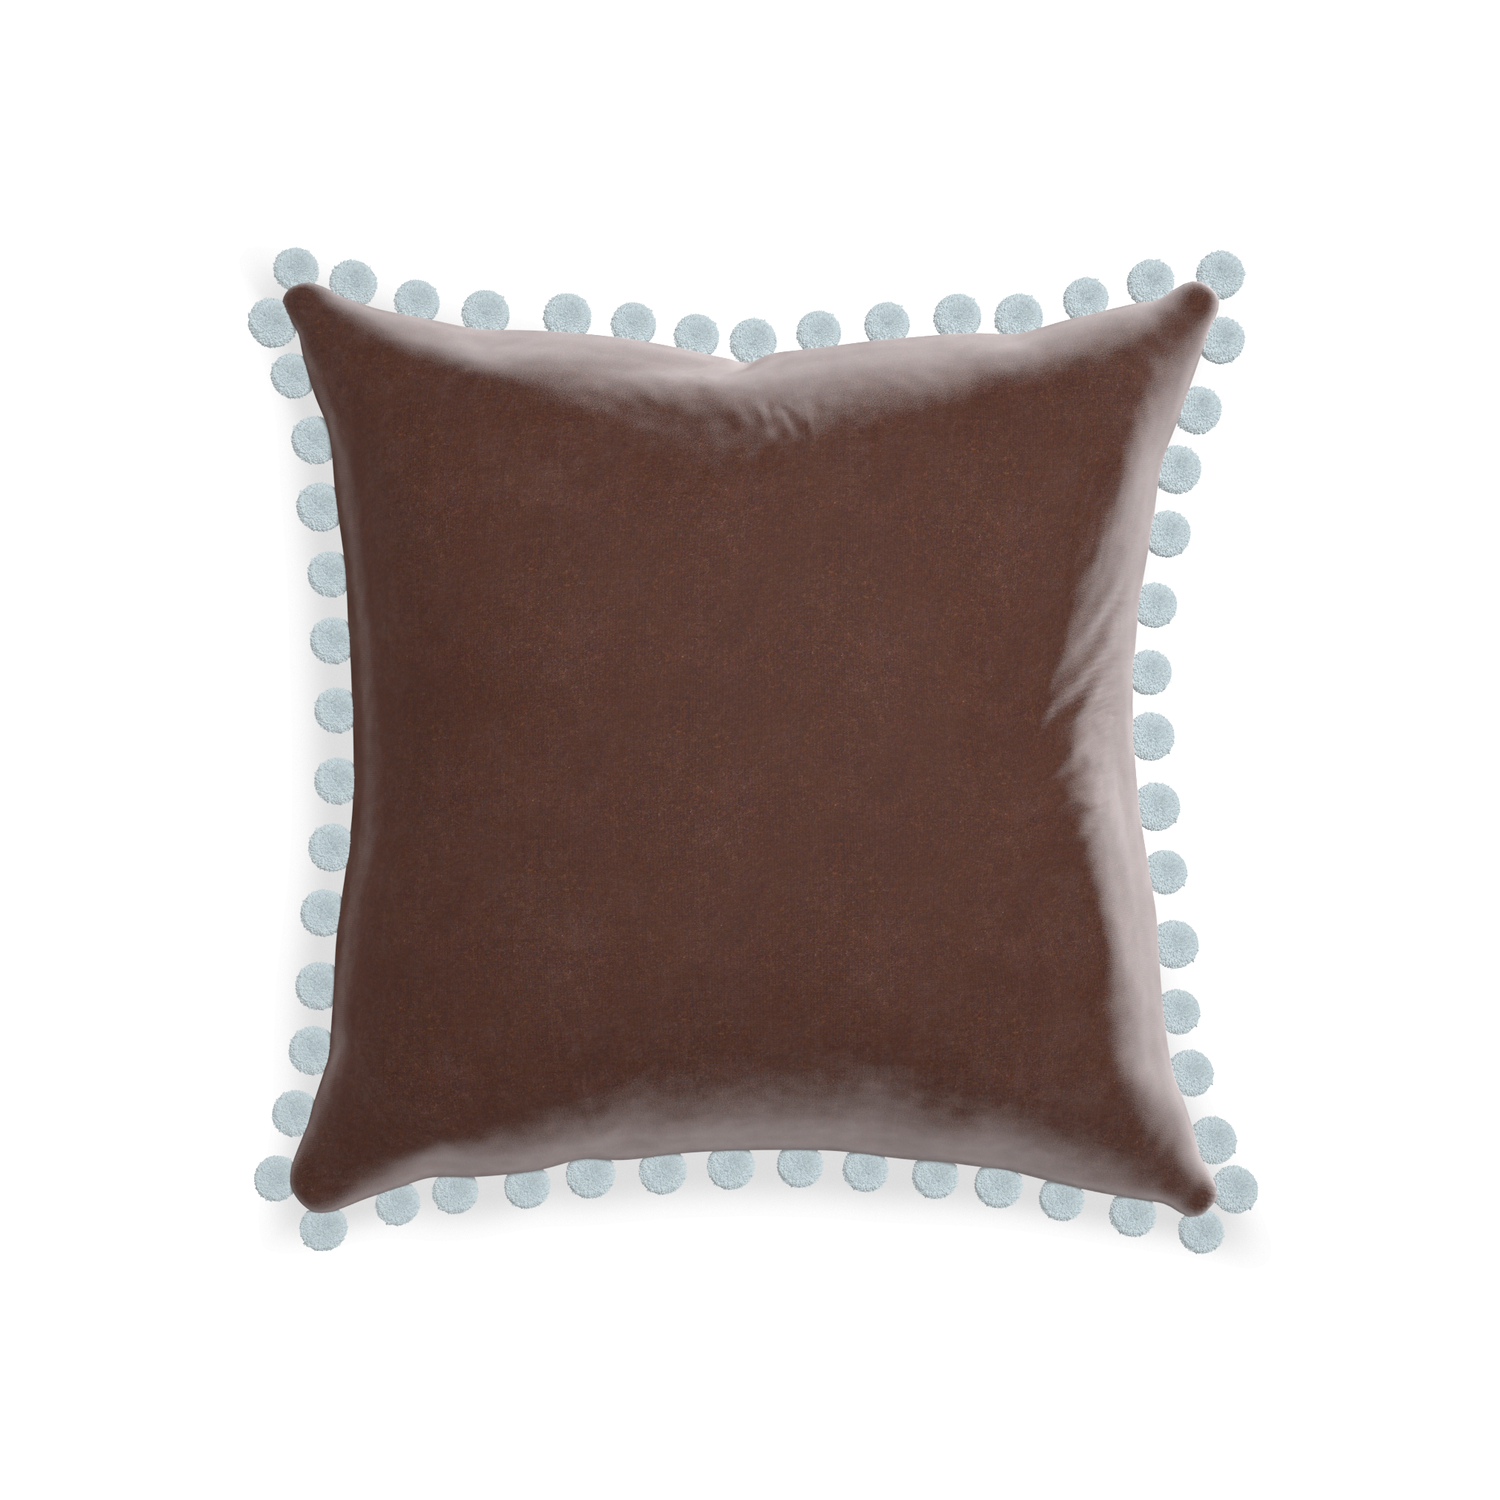 square brown velvet pillow with light blue pom poms